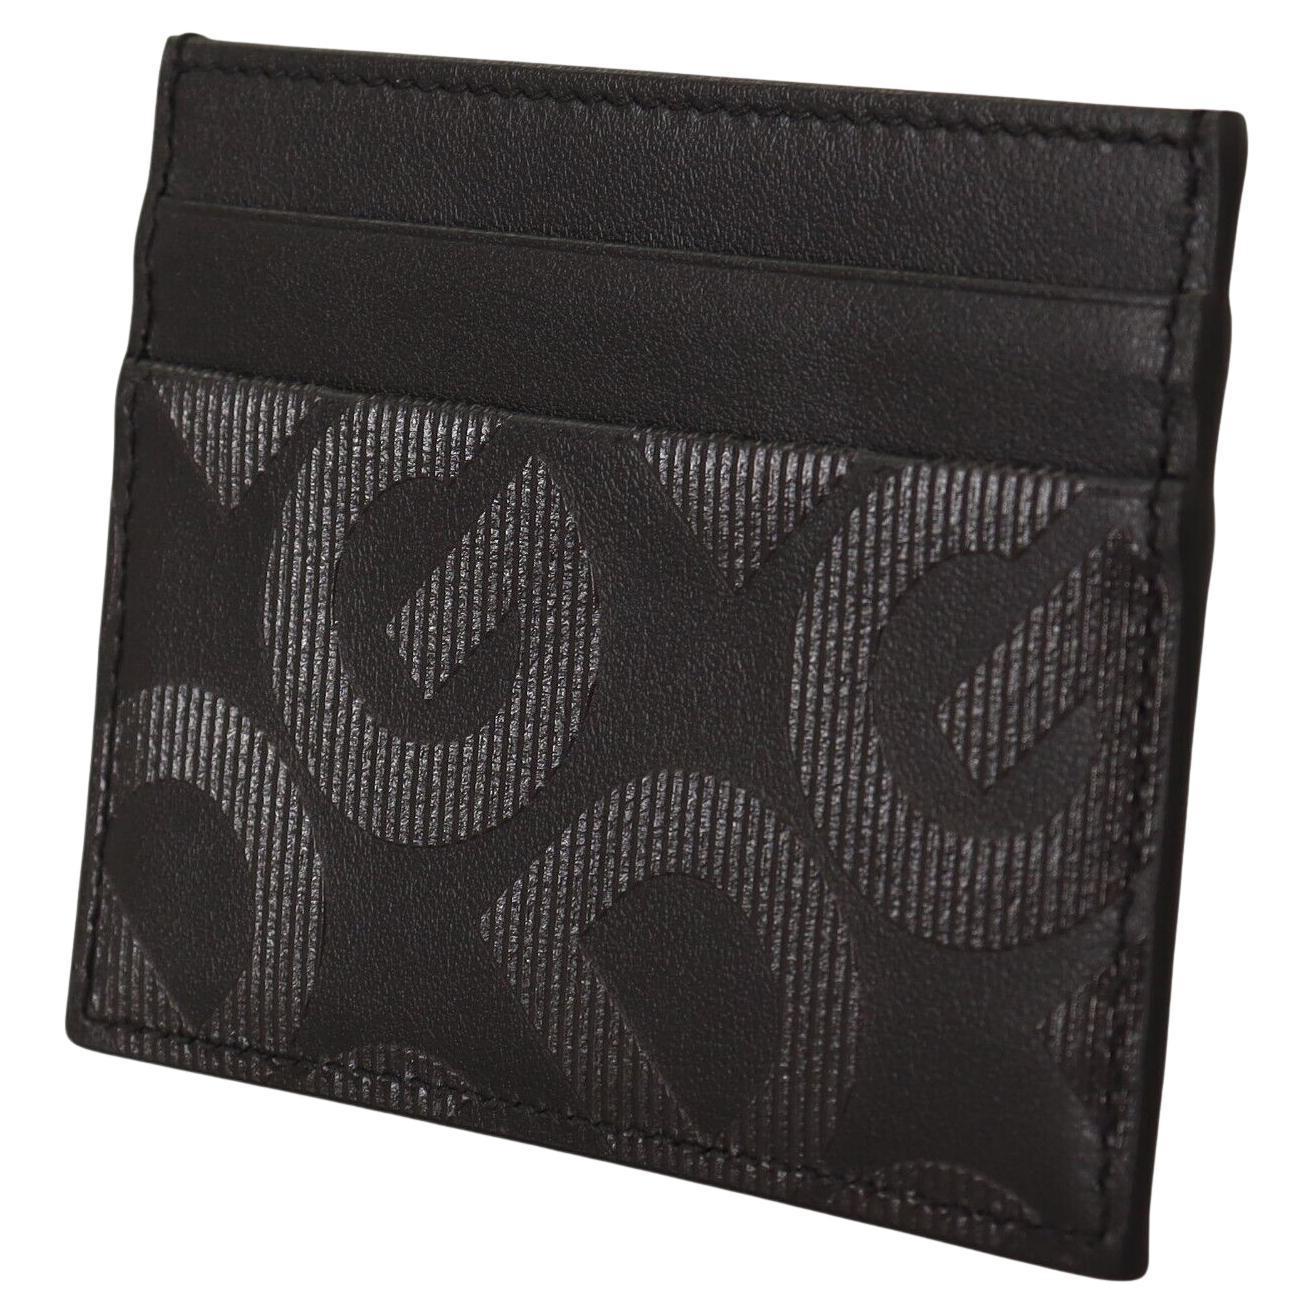 Dolce & Gabbana Black Leather Wallet Cardholder Men Purse with DG Logo